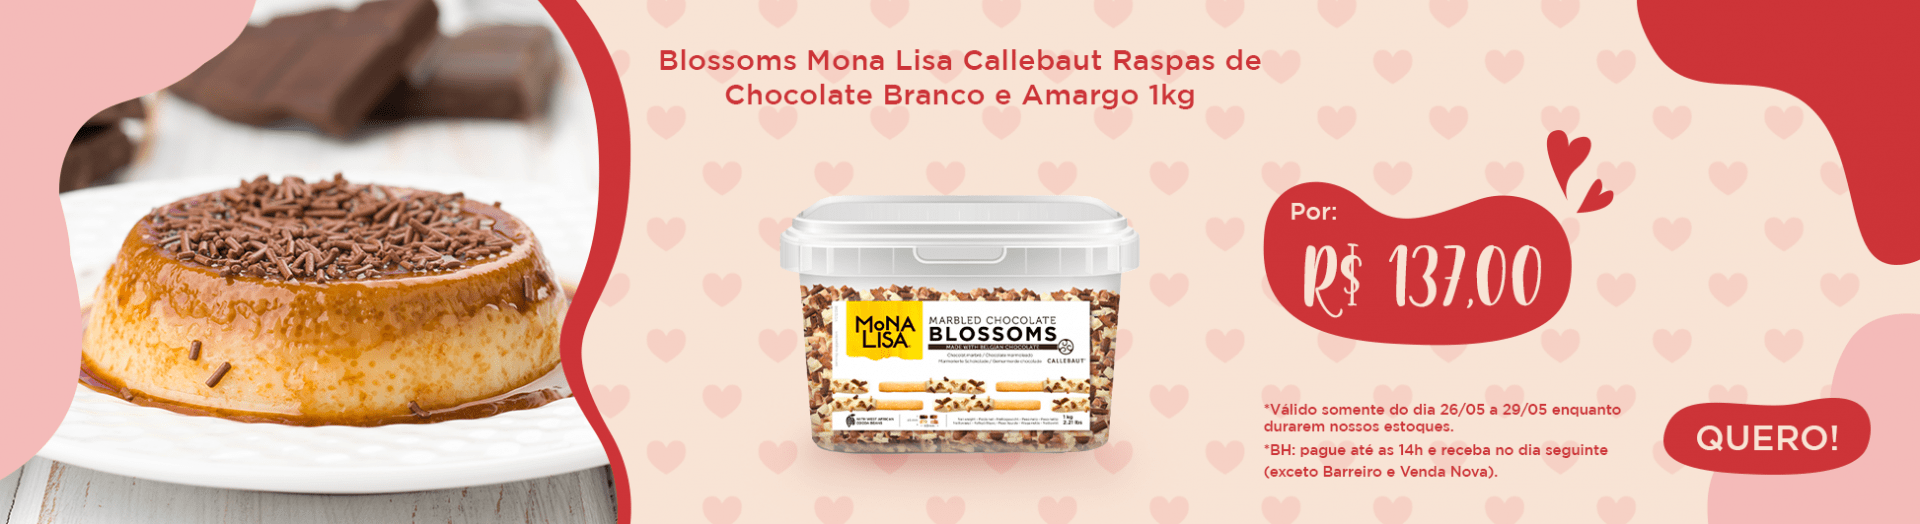 Blossoms Mona Lisa Callebaut Raspas de Chocolate Branco e Amargo 1kg